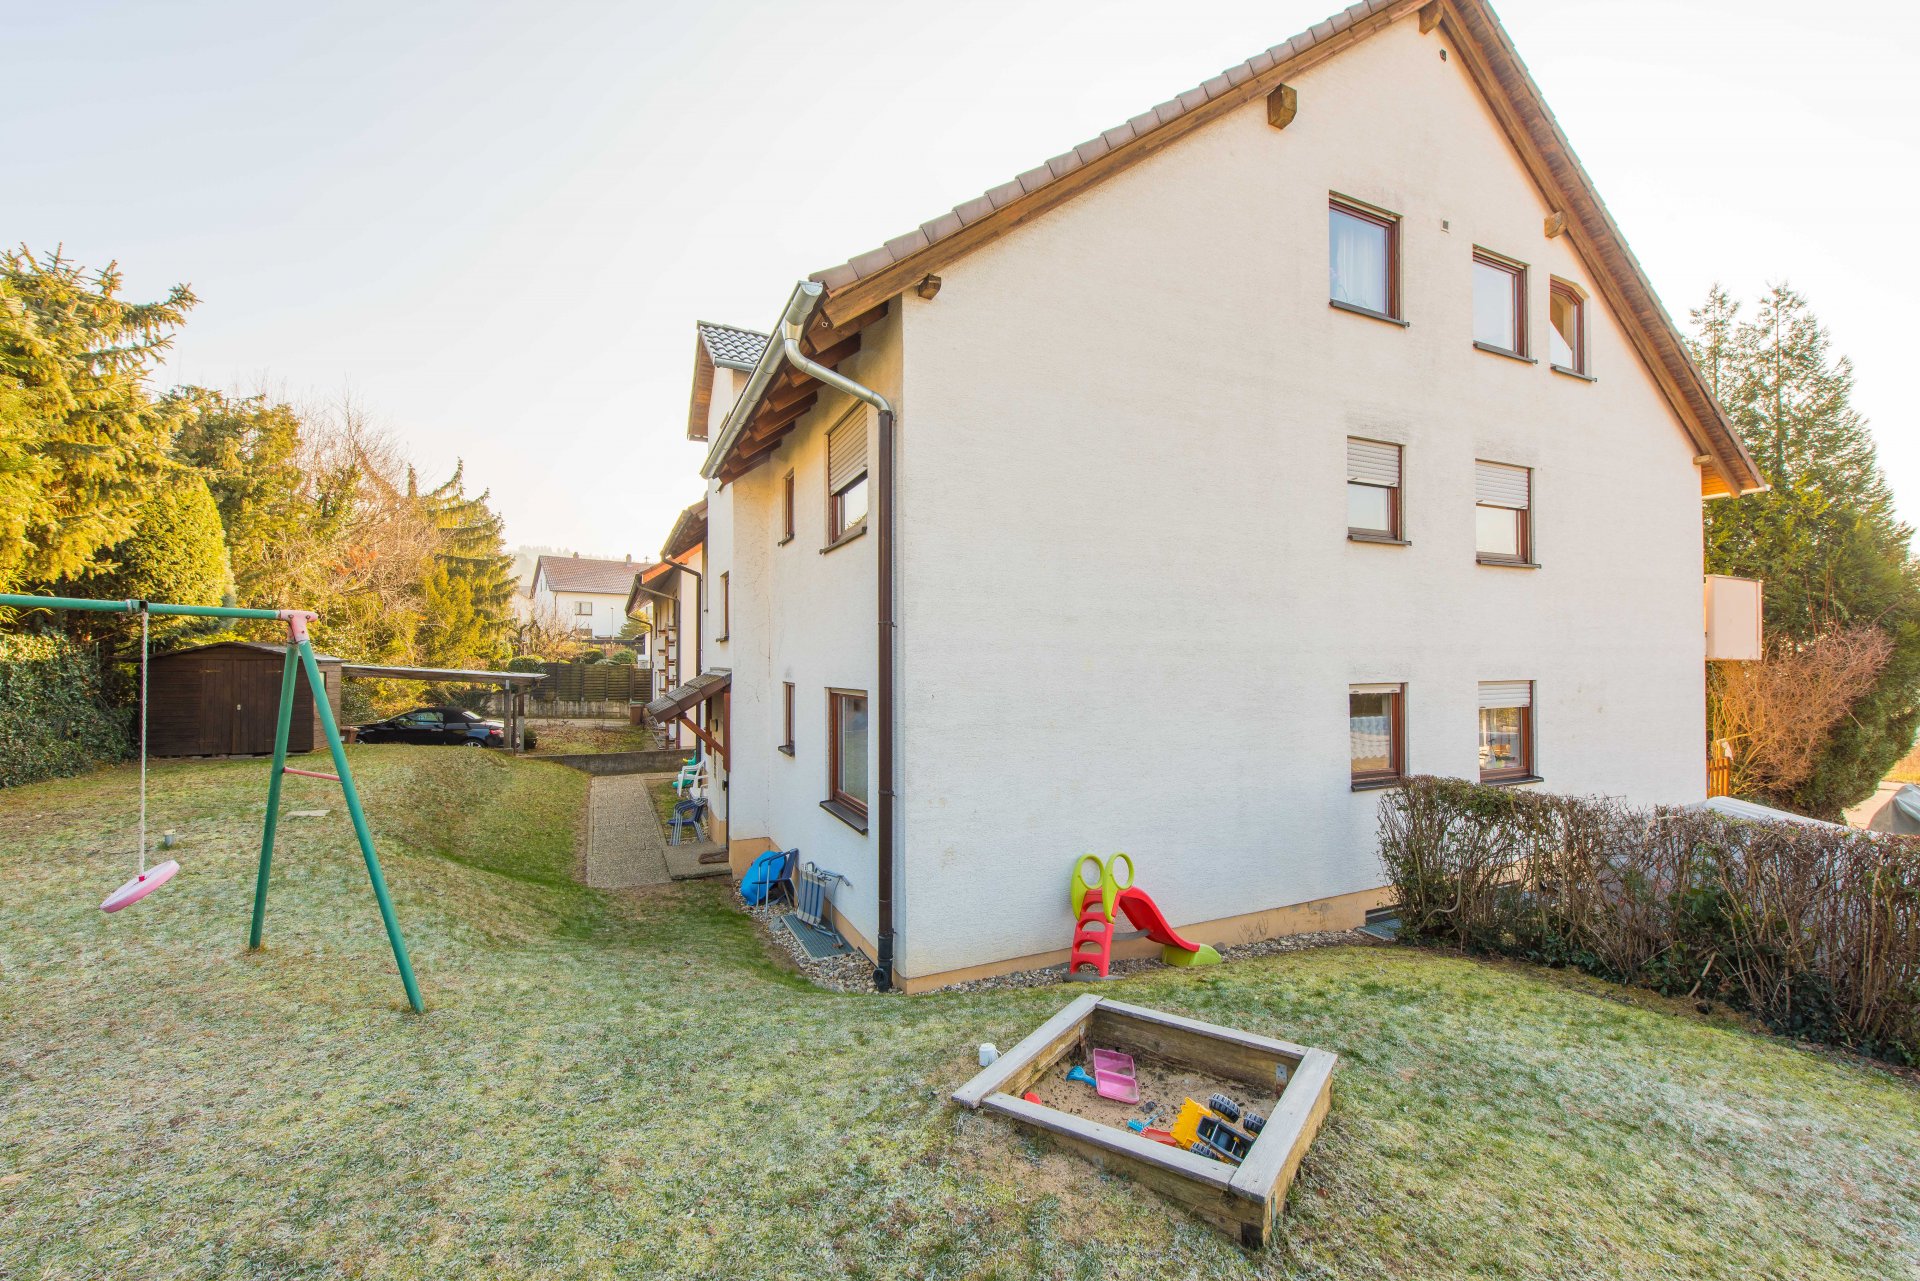 Kinder spielen draußen, Ruhe im Haus - Oliver Reifferscheid - Immobilienmakler Darmstadt